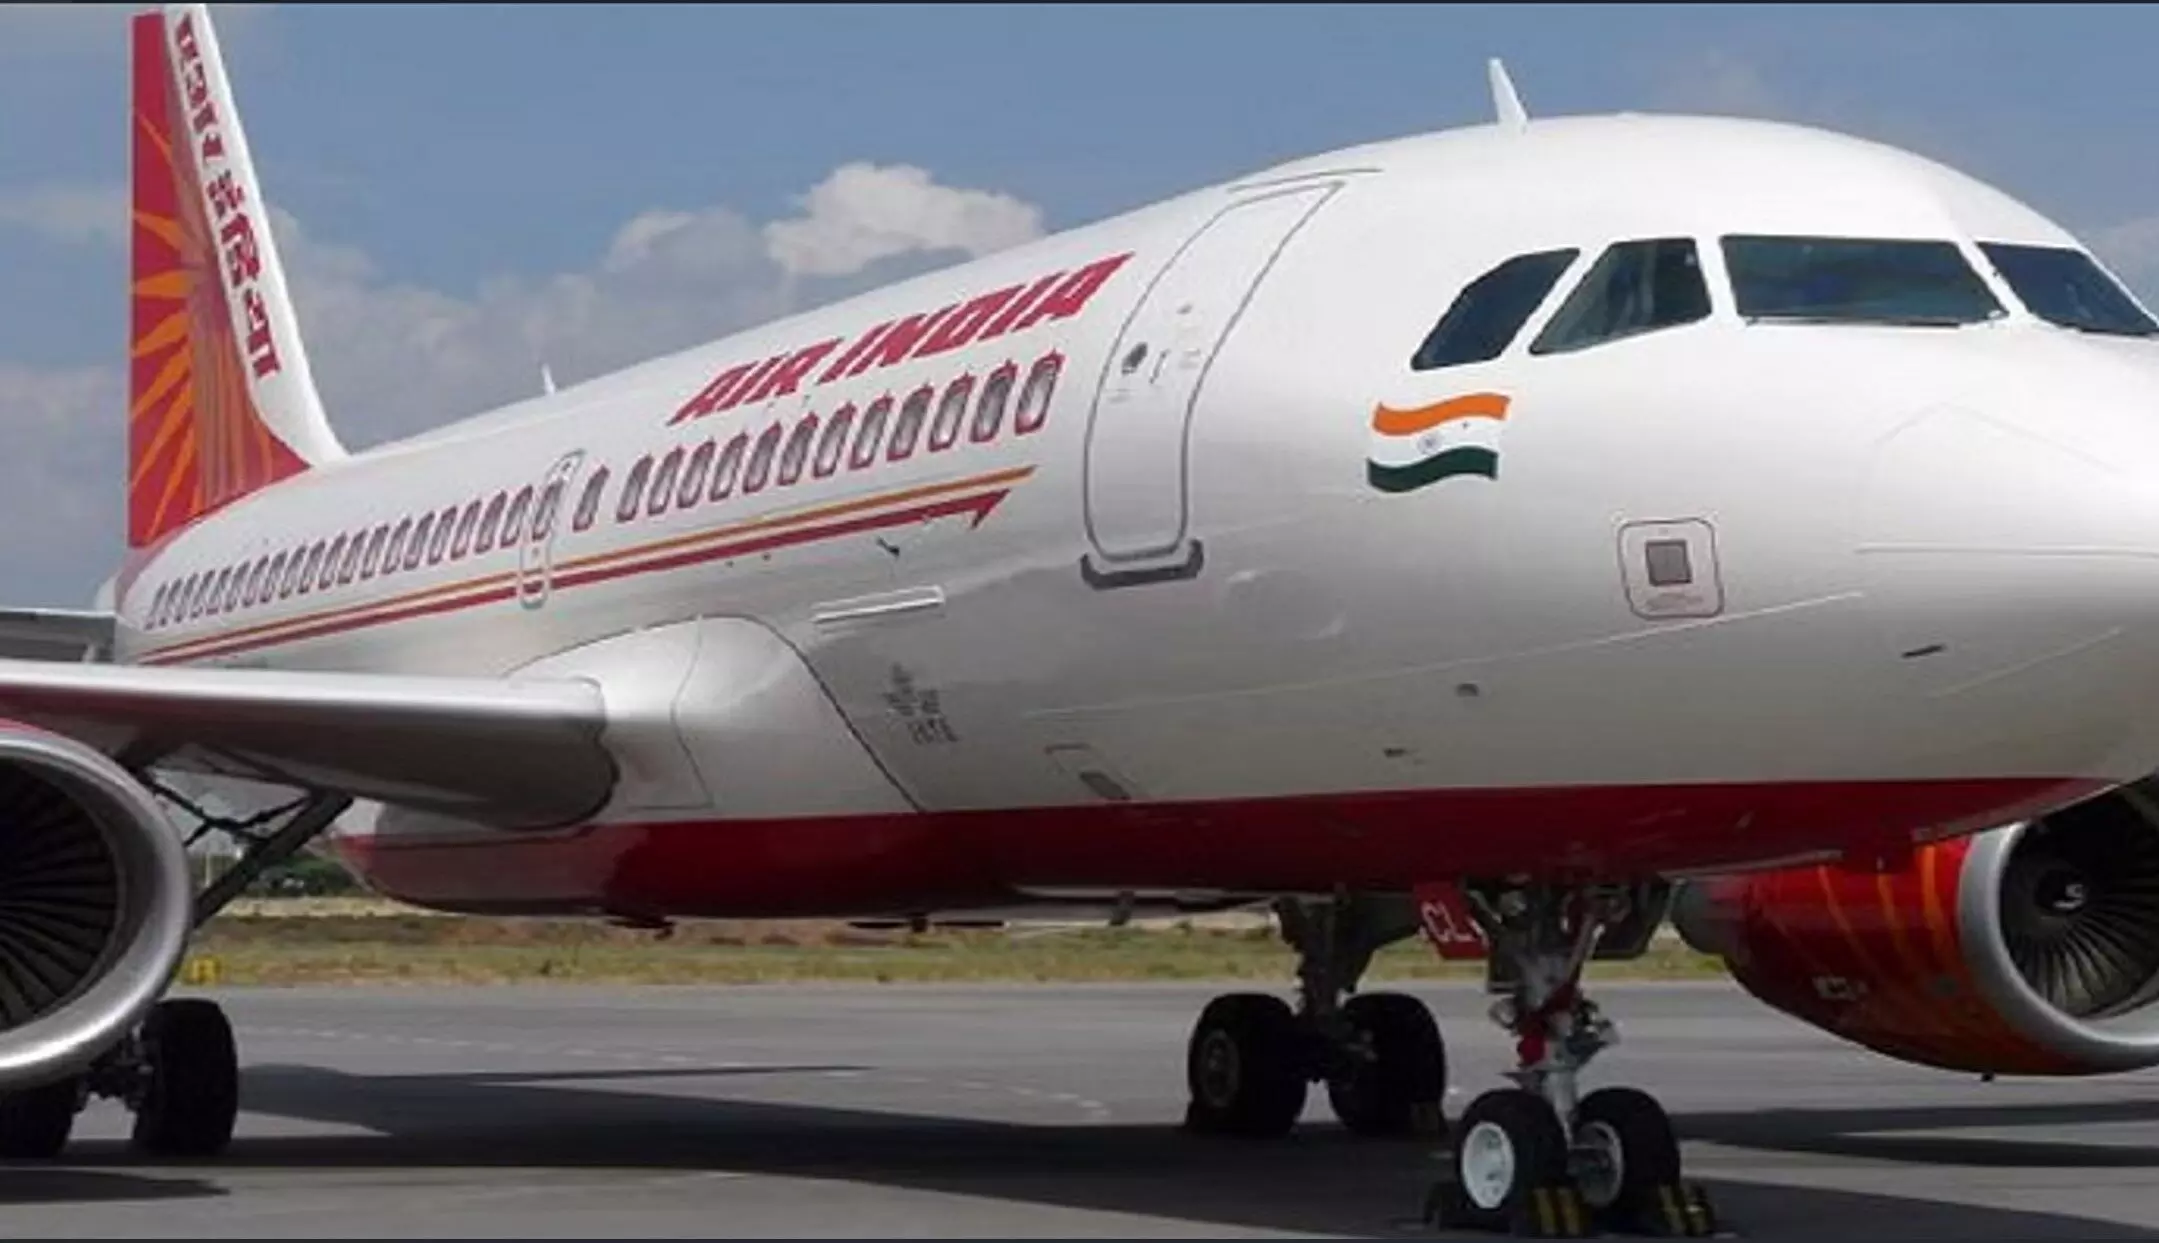 Air India Express:एयर इंडिया एक्सप्रेस का बड़ा एक्शन, बीमारी के नाम पर छुट्टी पर गए 25 कर्मचारियों को निकाला